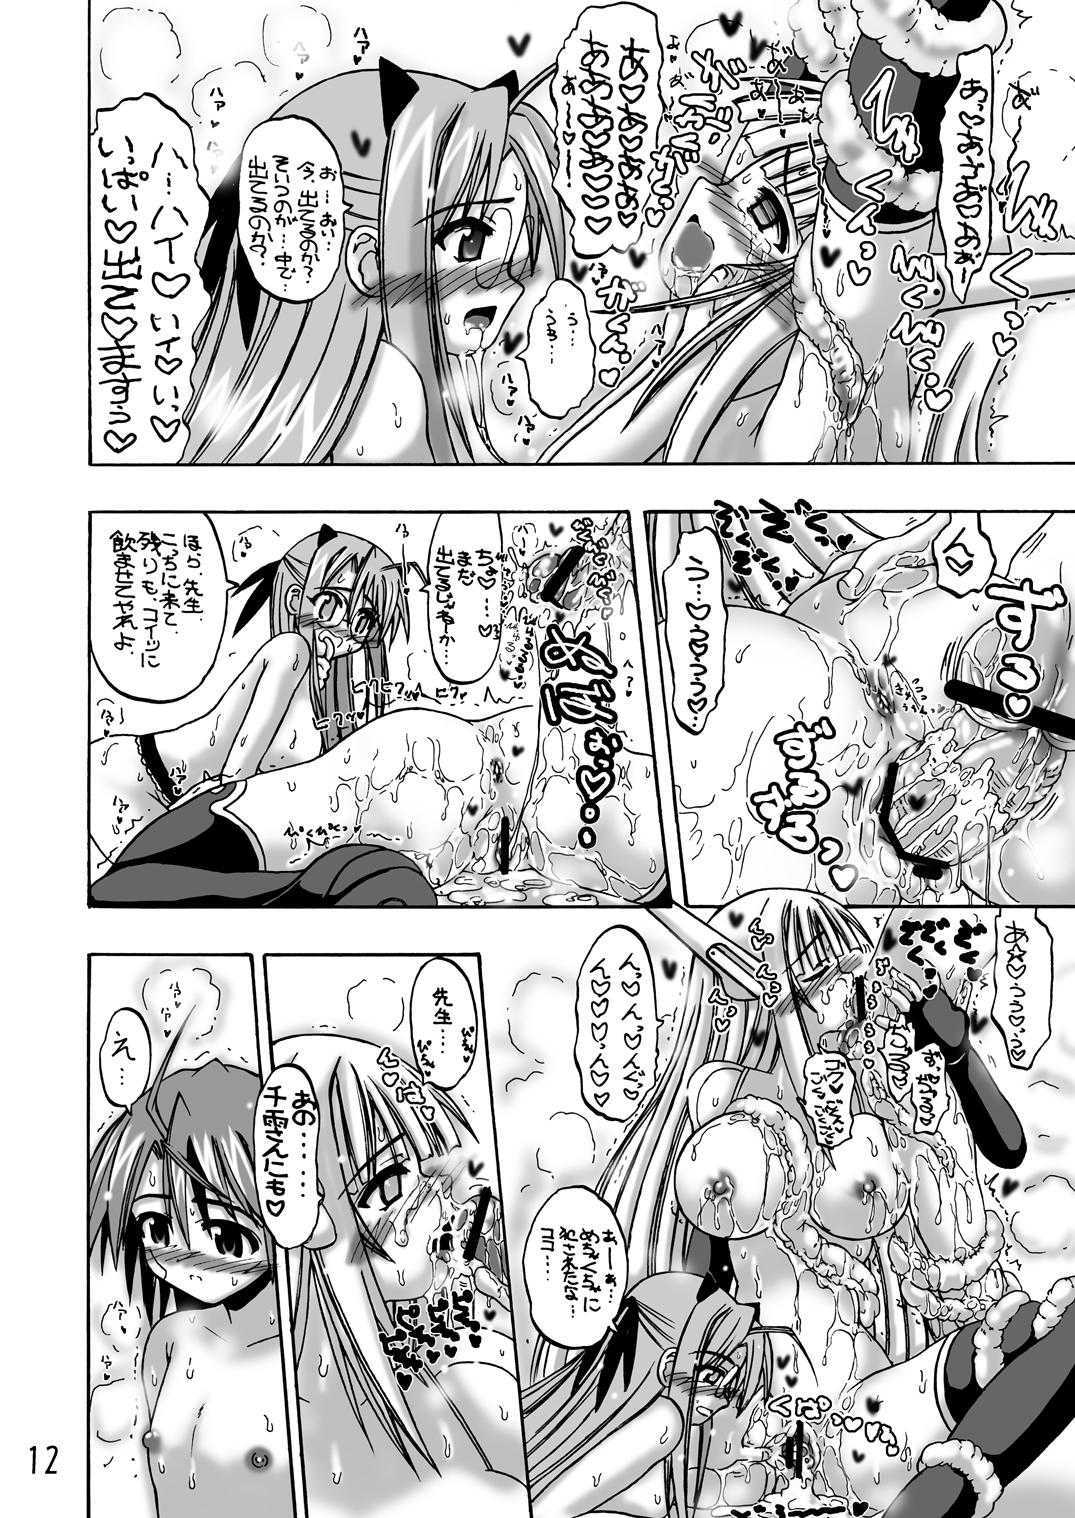 Putaria LOVE LOVE LOVE - Mahou sensei negima Skirt - Page 11